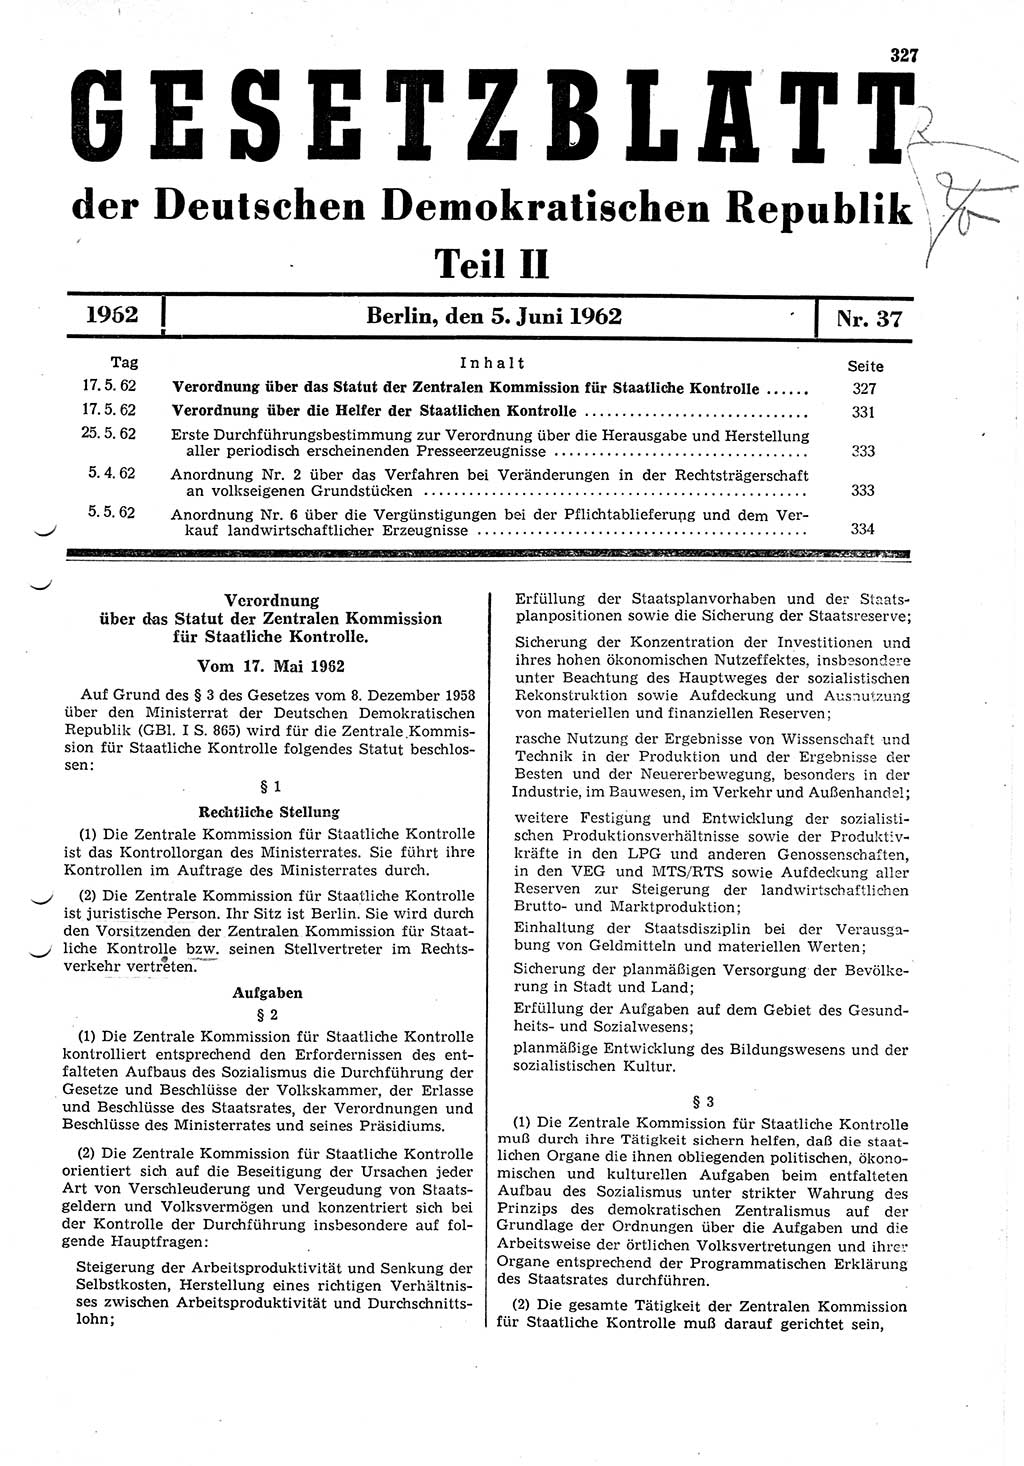 Gesetzblatt (GBl.) der Deutschen Demokratischen Republik (DDR) Teil ⅠⅠ 1962, Seite 327 (GBl. DDR ⅠⅠ 1962, S. 327)